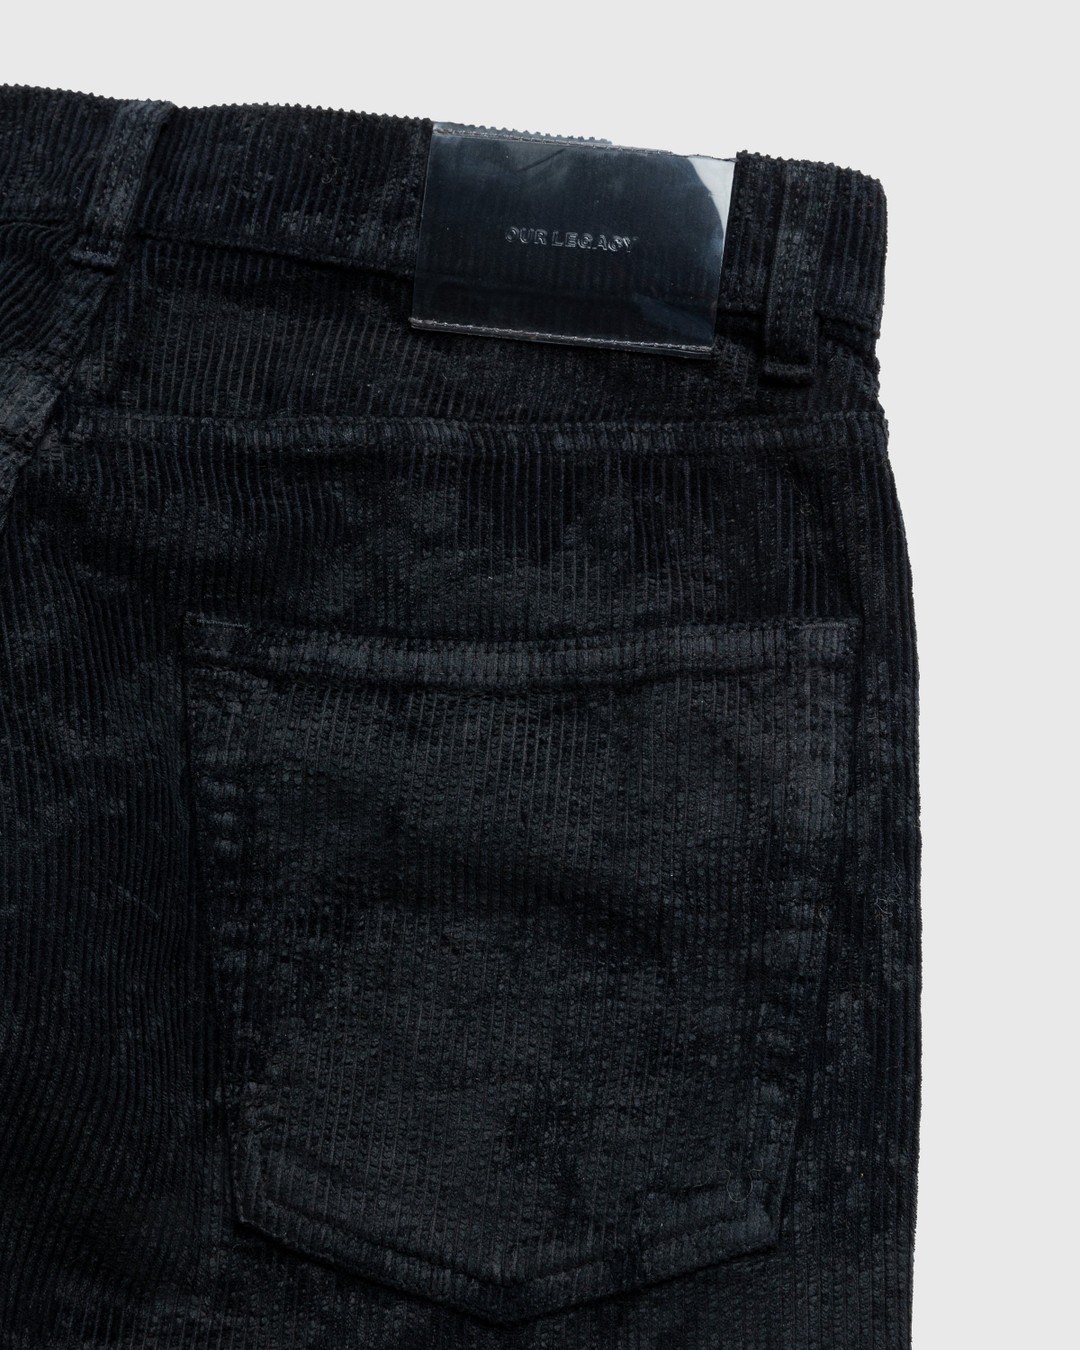 Our Legacy – Vast Cut Corduroy Jeans Black - Denim - Black - Image 4